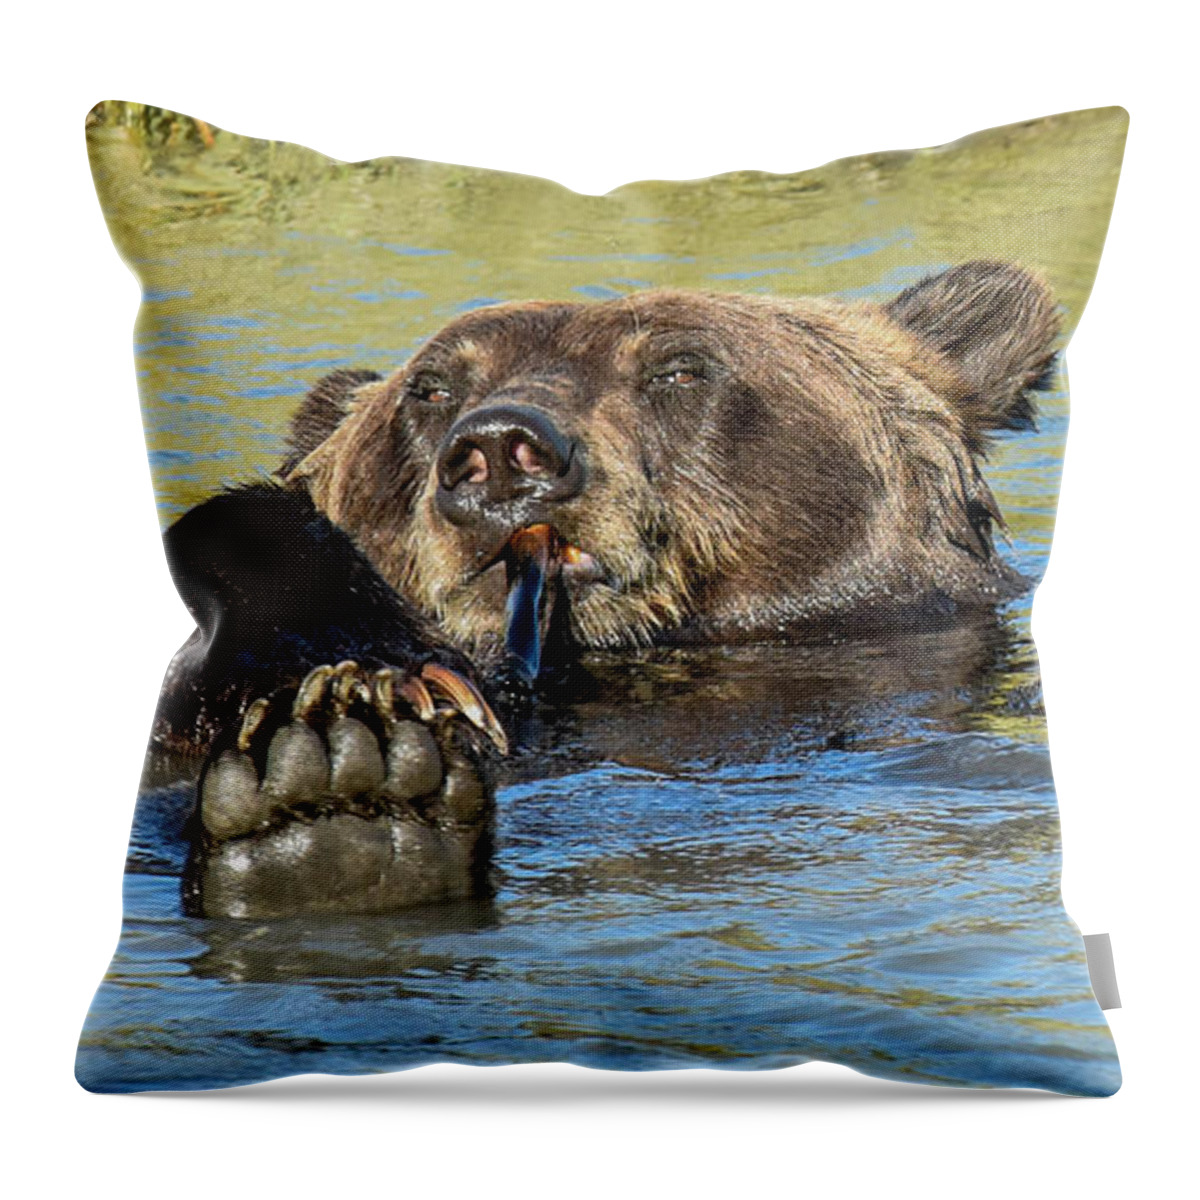 Brown Bear Throw Pillow featuring the photograph Rub a Dub Dub A Bear in his Tub by Don Mennig